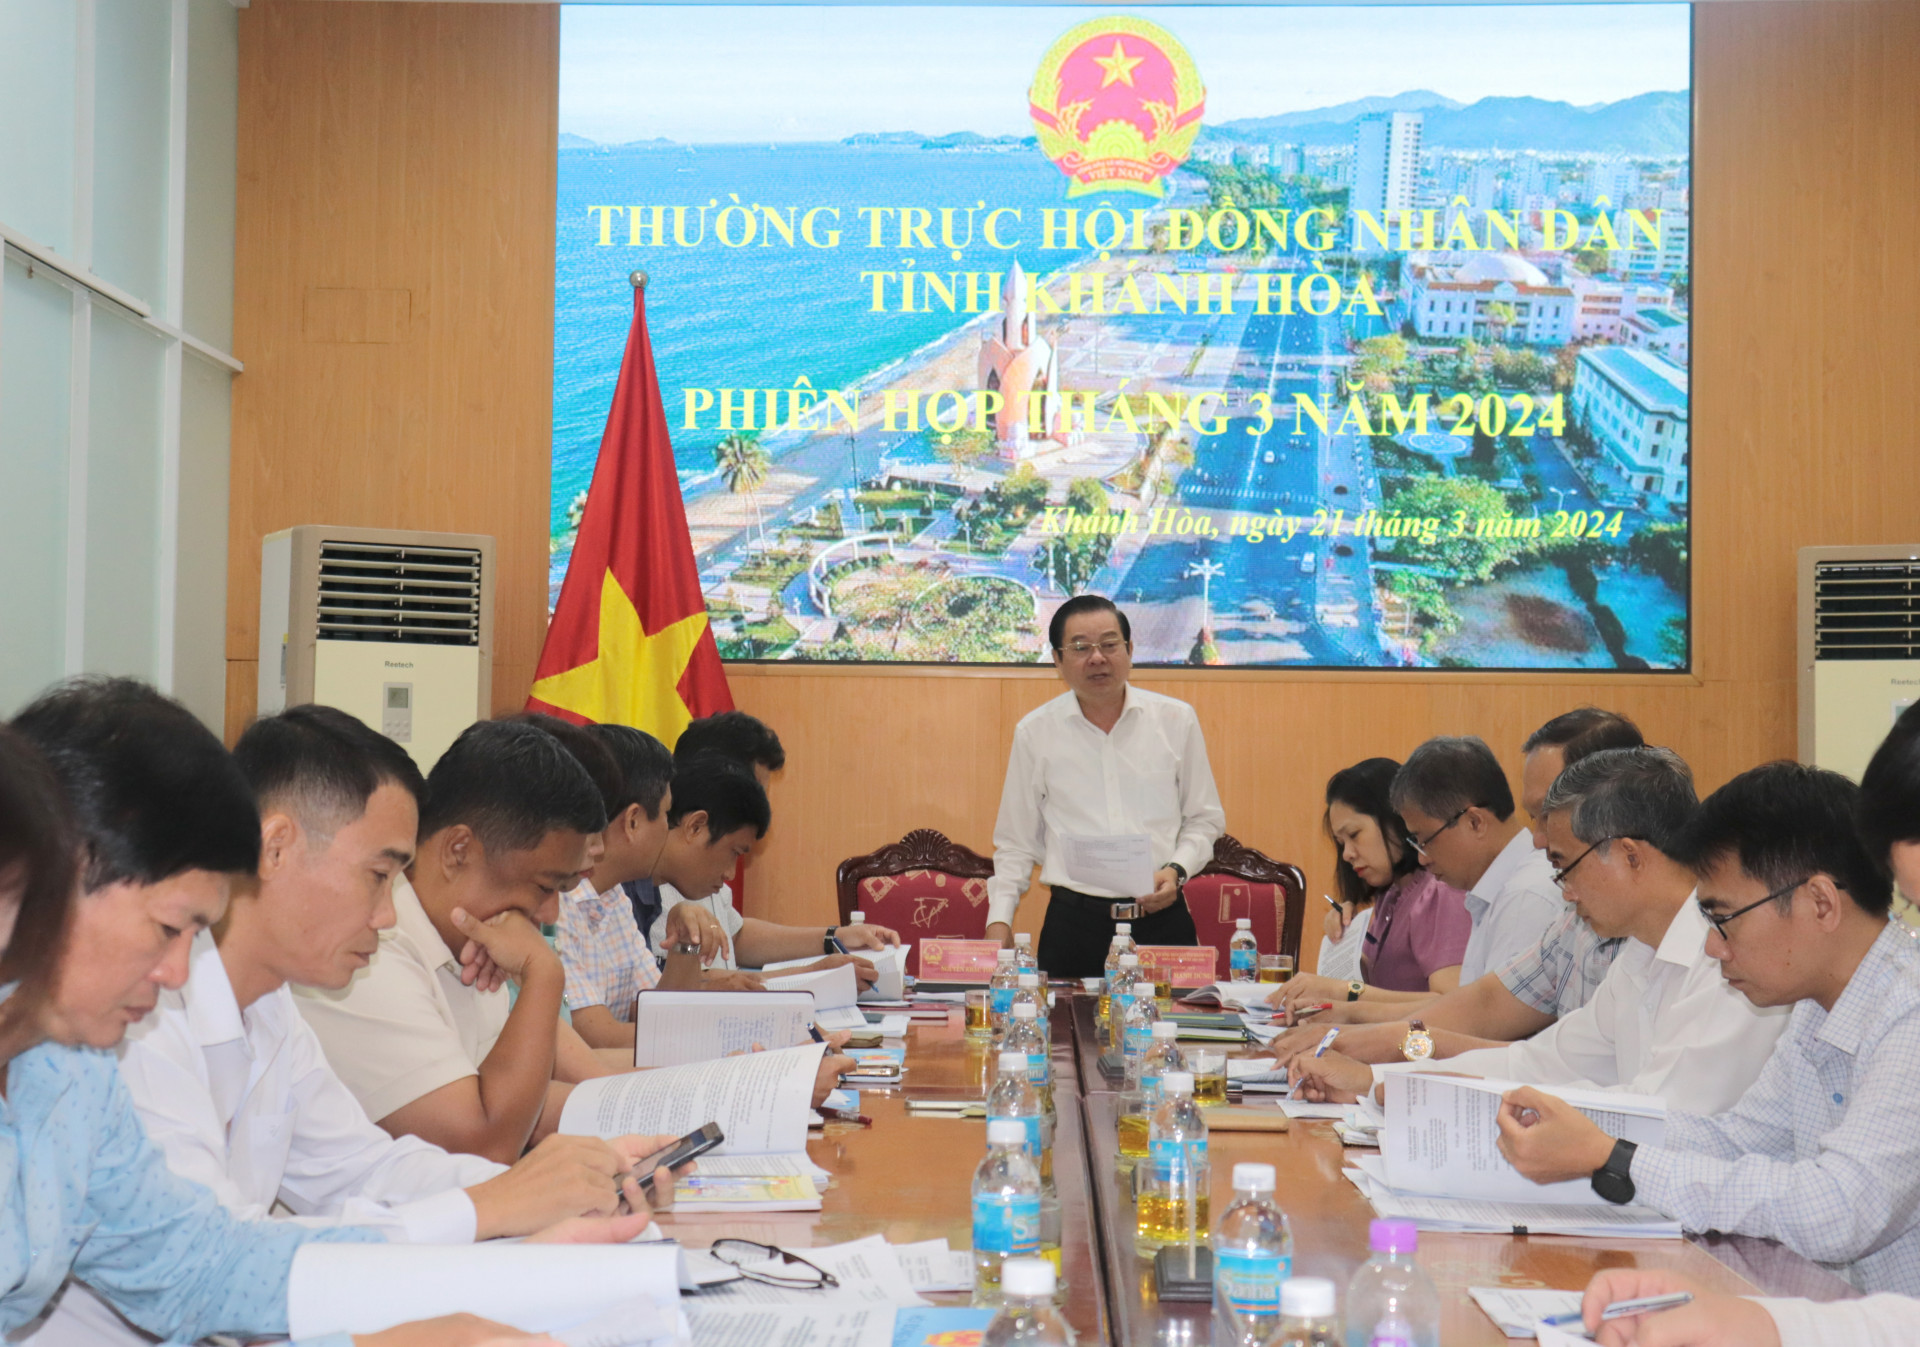 Quang cảnh tại Phiên họp Thường trực HĐND tỉnh tháng 3-2024